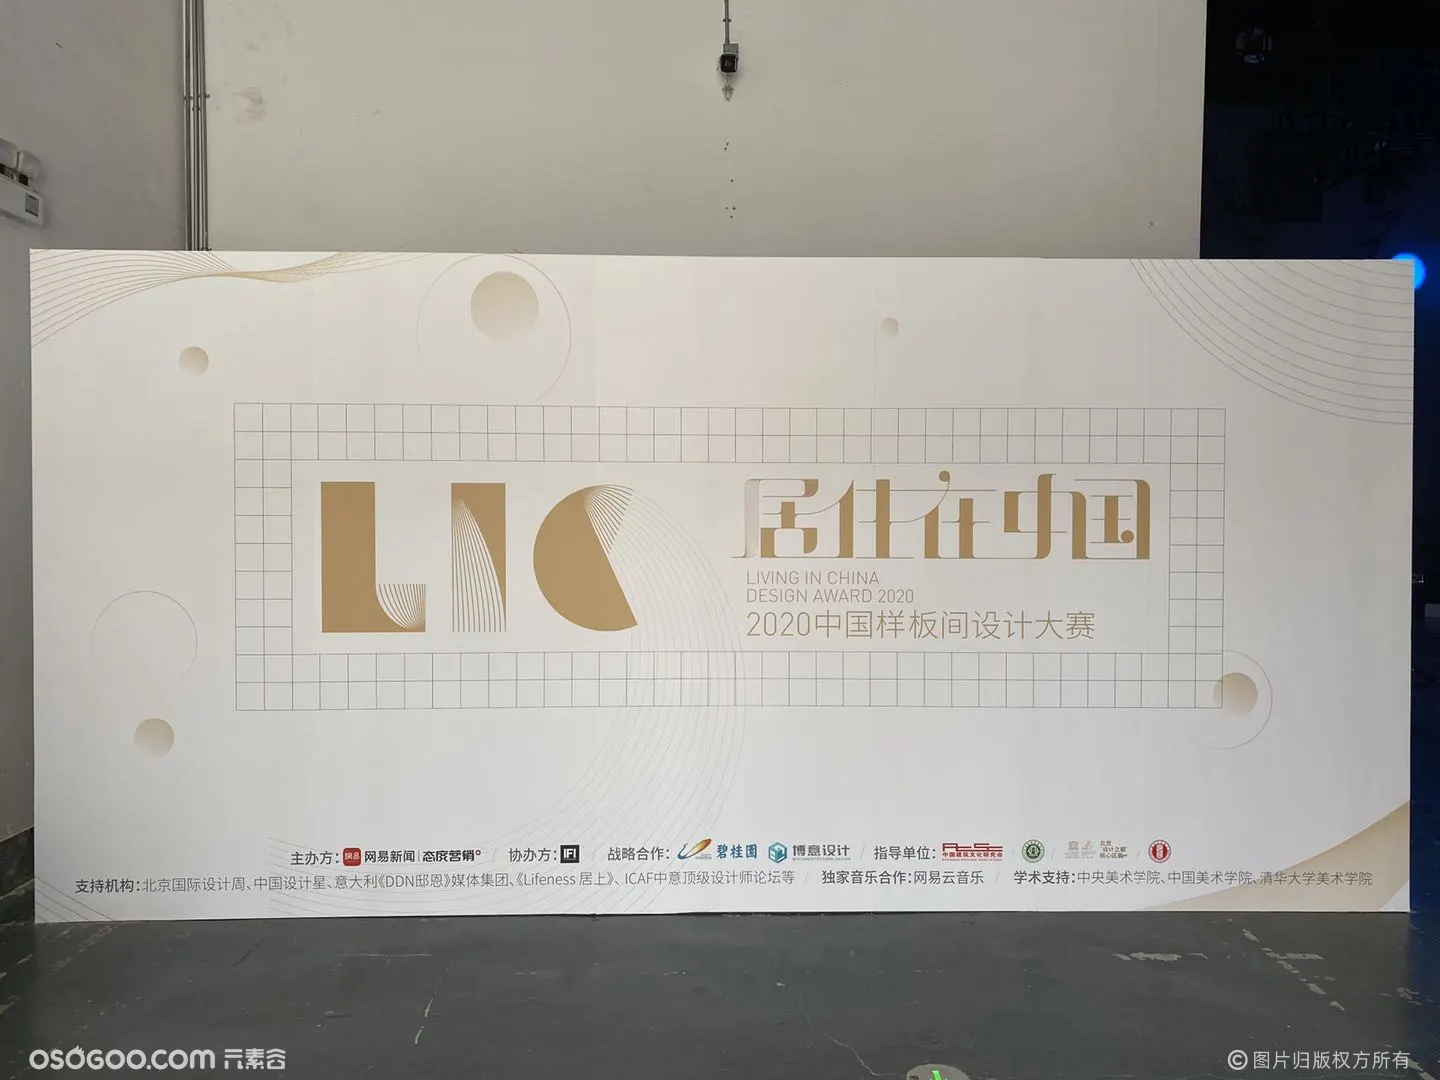 2020中国样板间设计大赛拍照签到墙